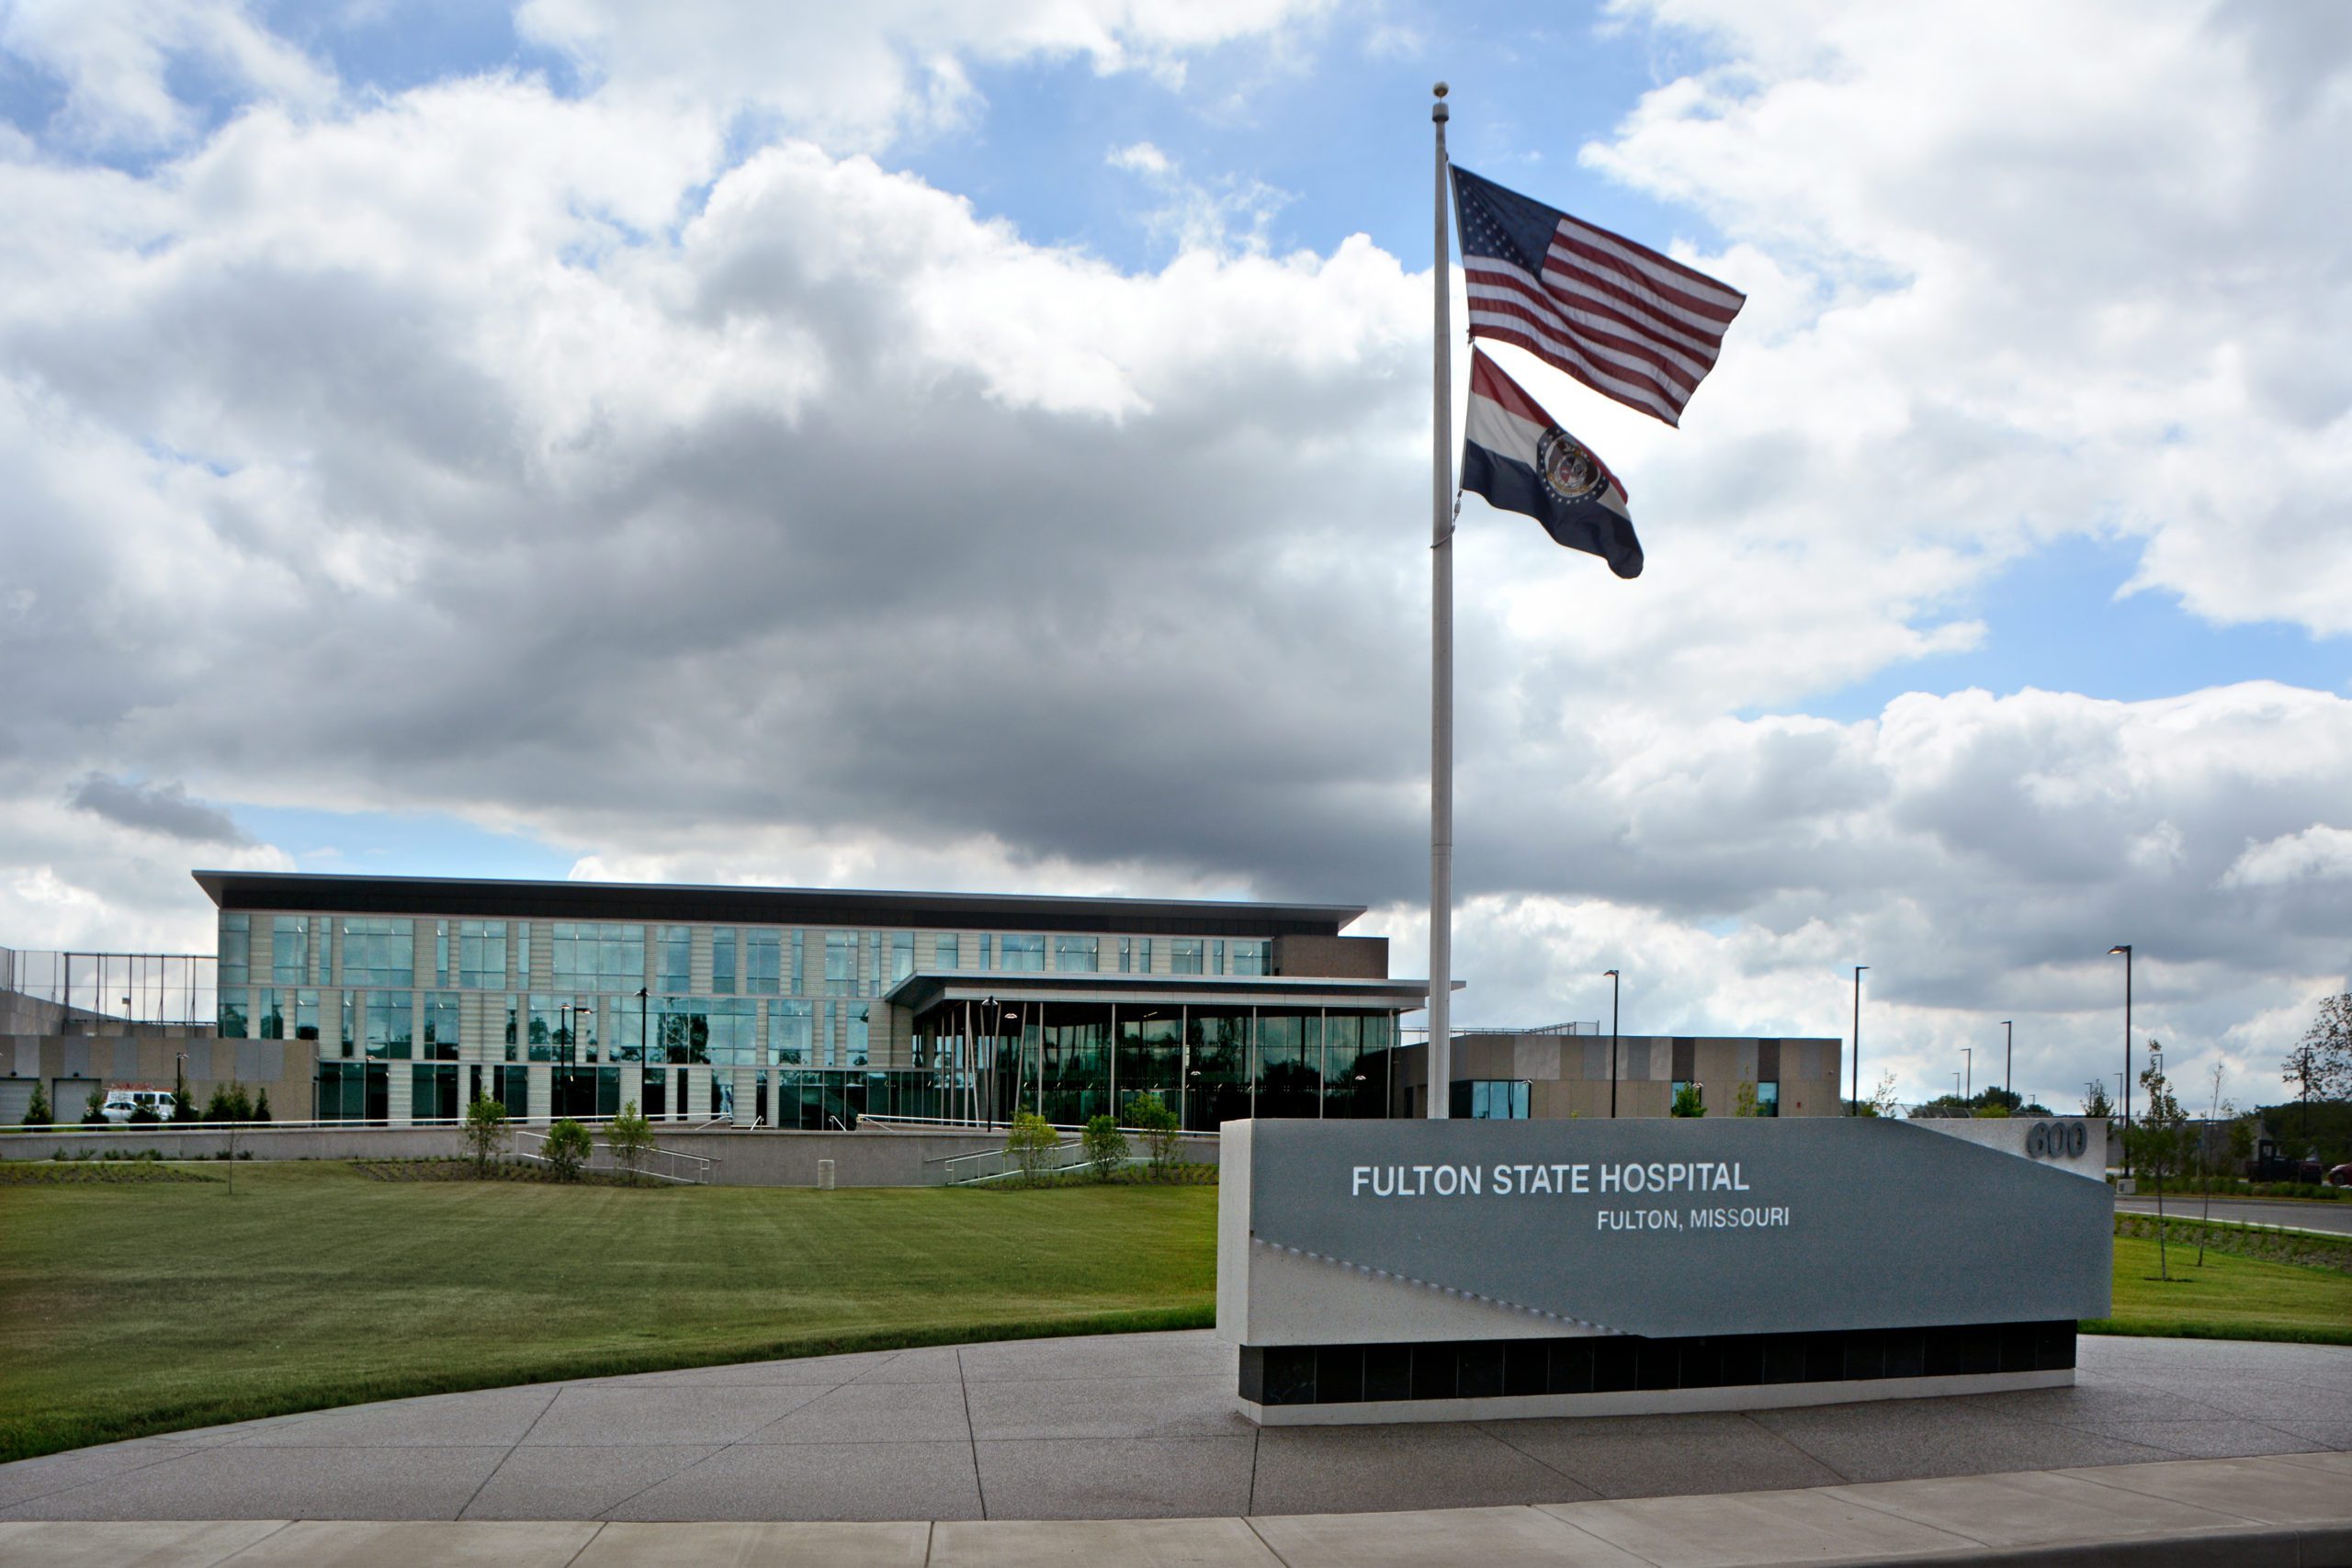 Fulton State Hospital in Fulton, MO